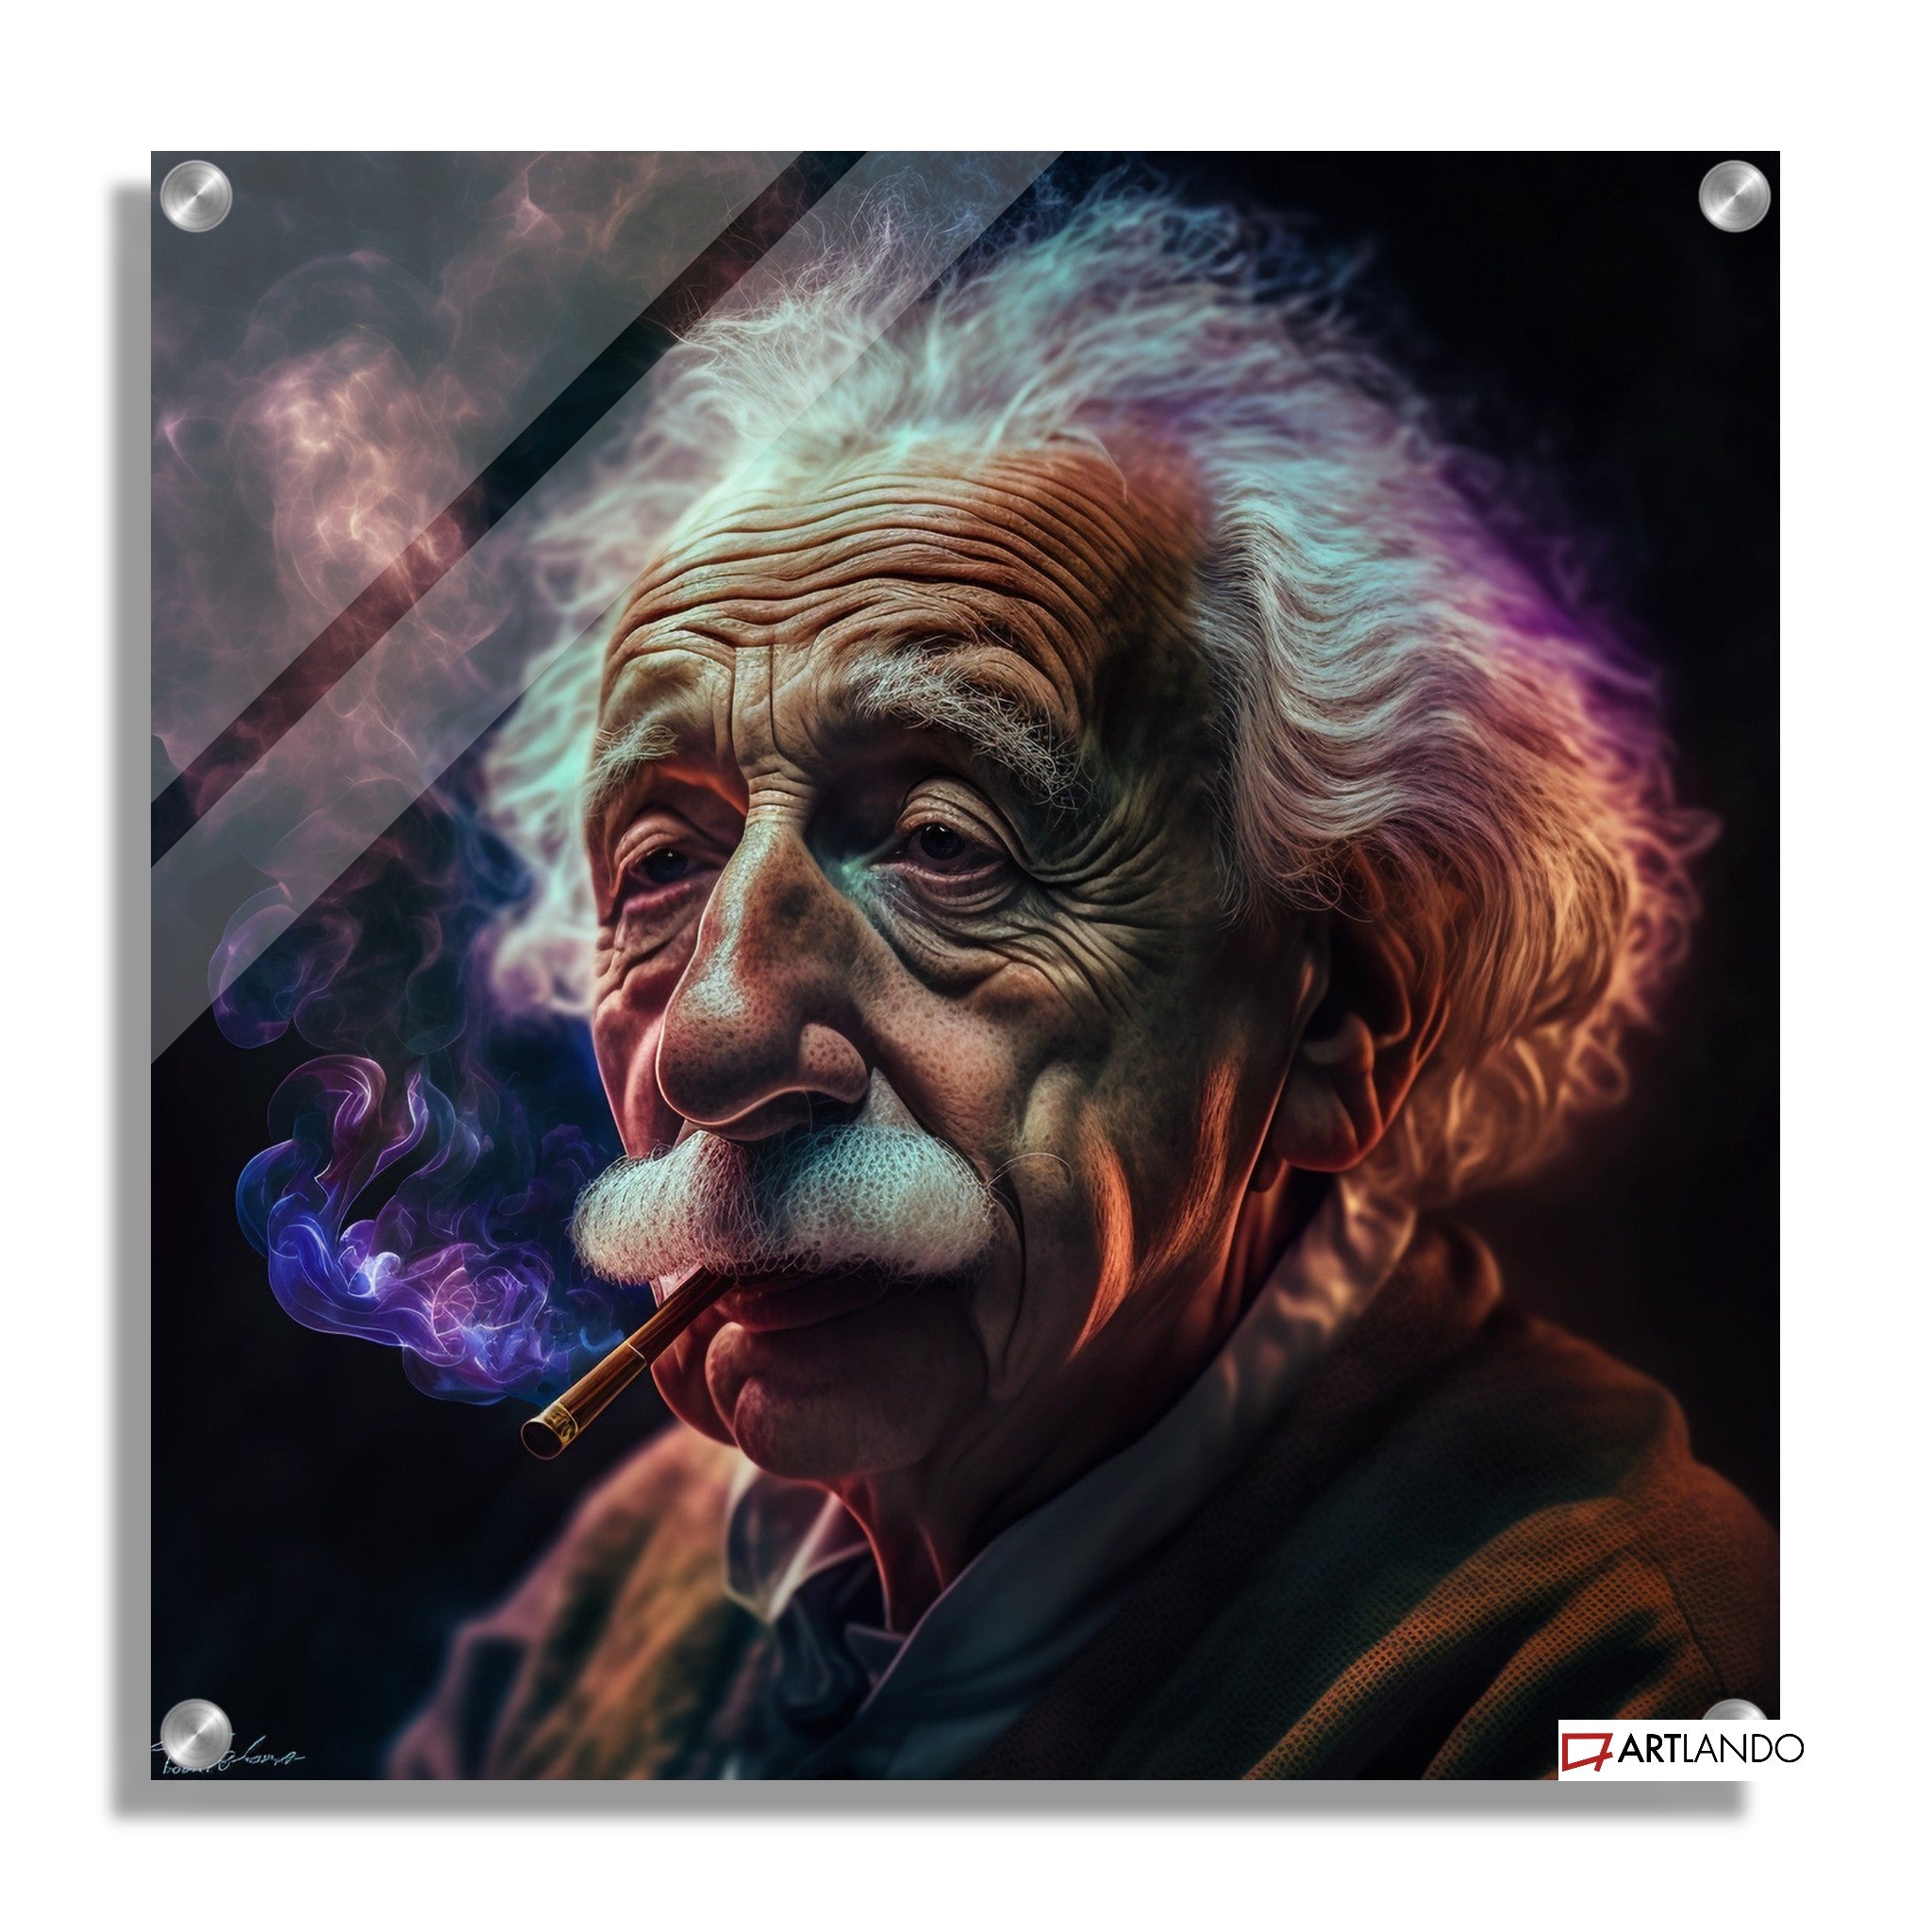 Albert Einstein raucht Joint - Portrait Art